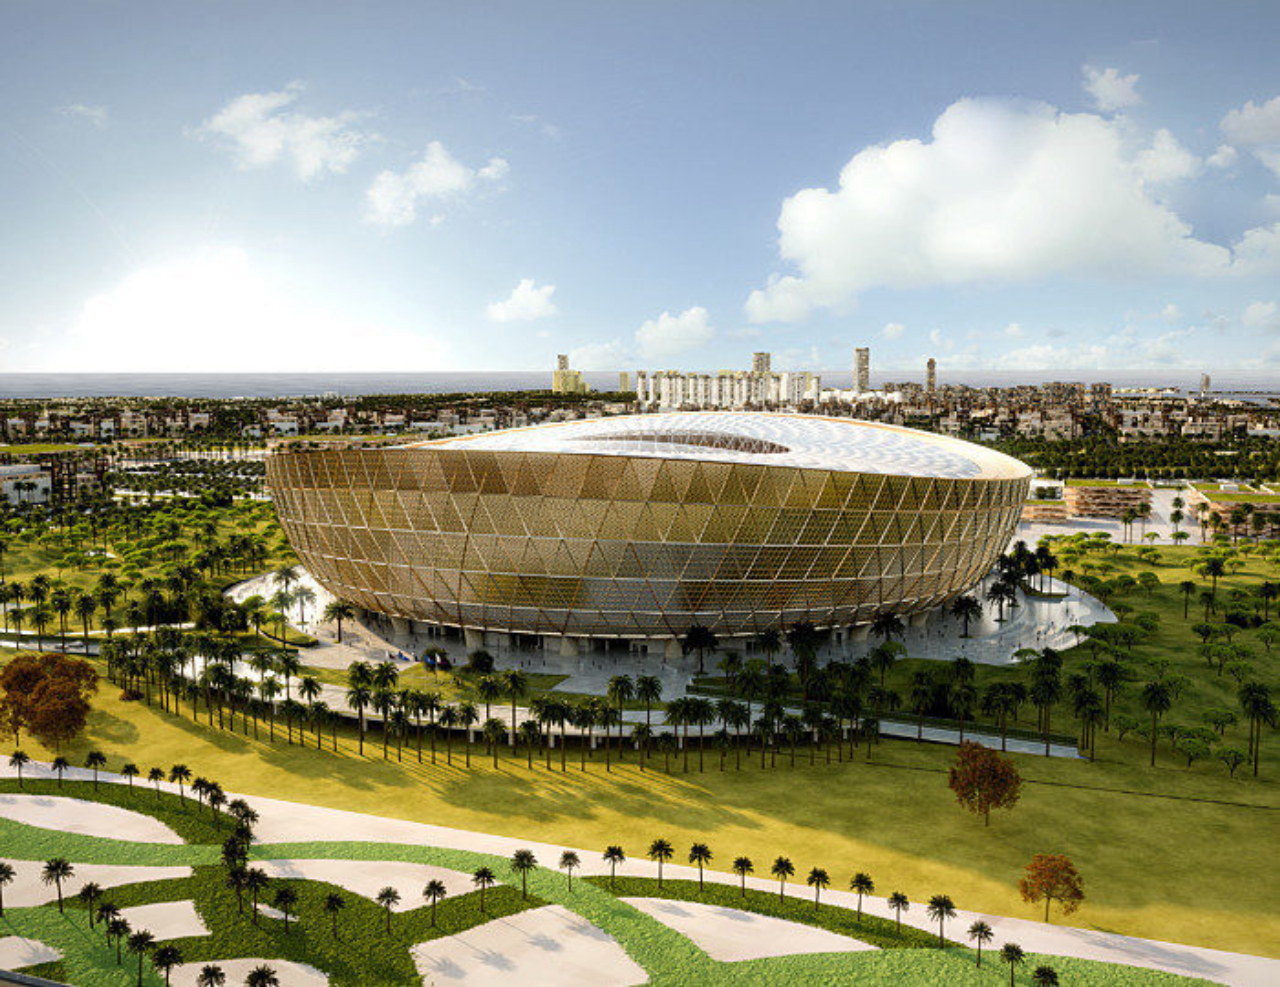 Estádio Lusail: conheça onde será a partida final da Copa do Mundo